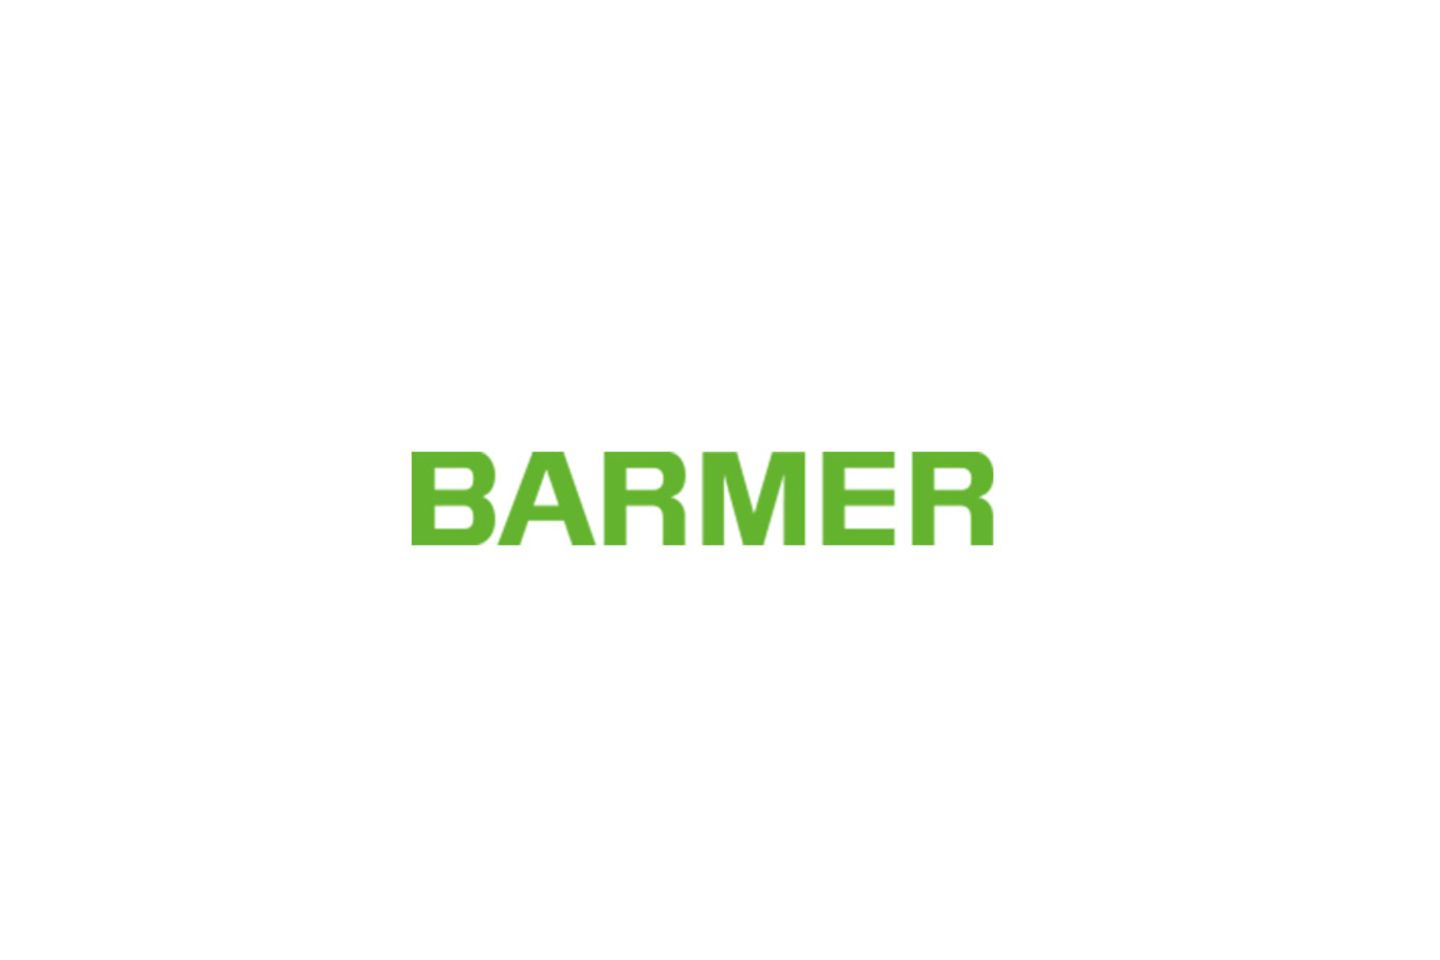 Logo de BARMER